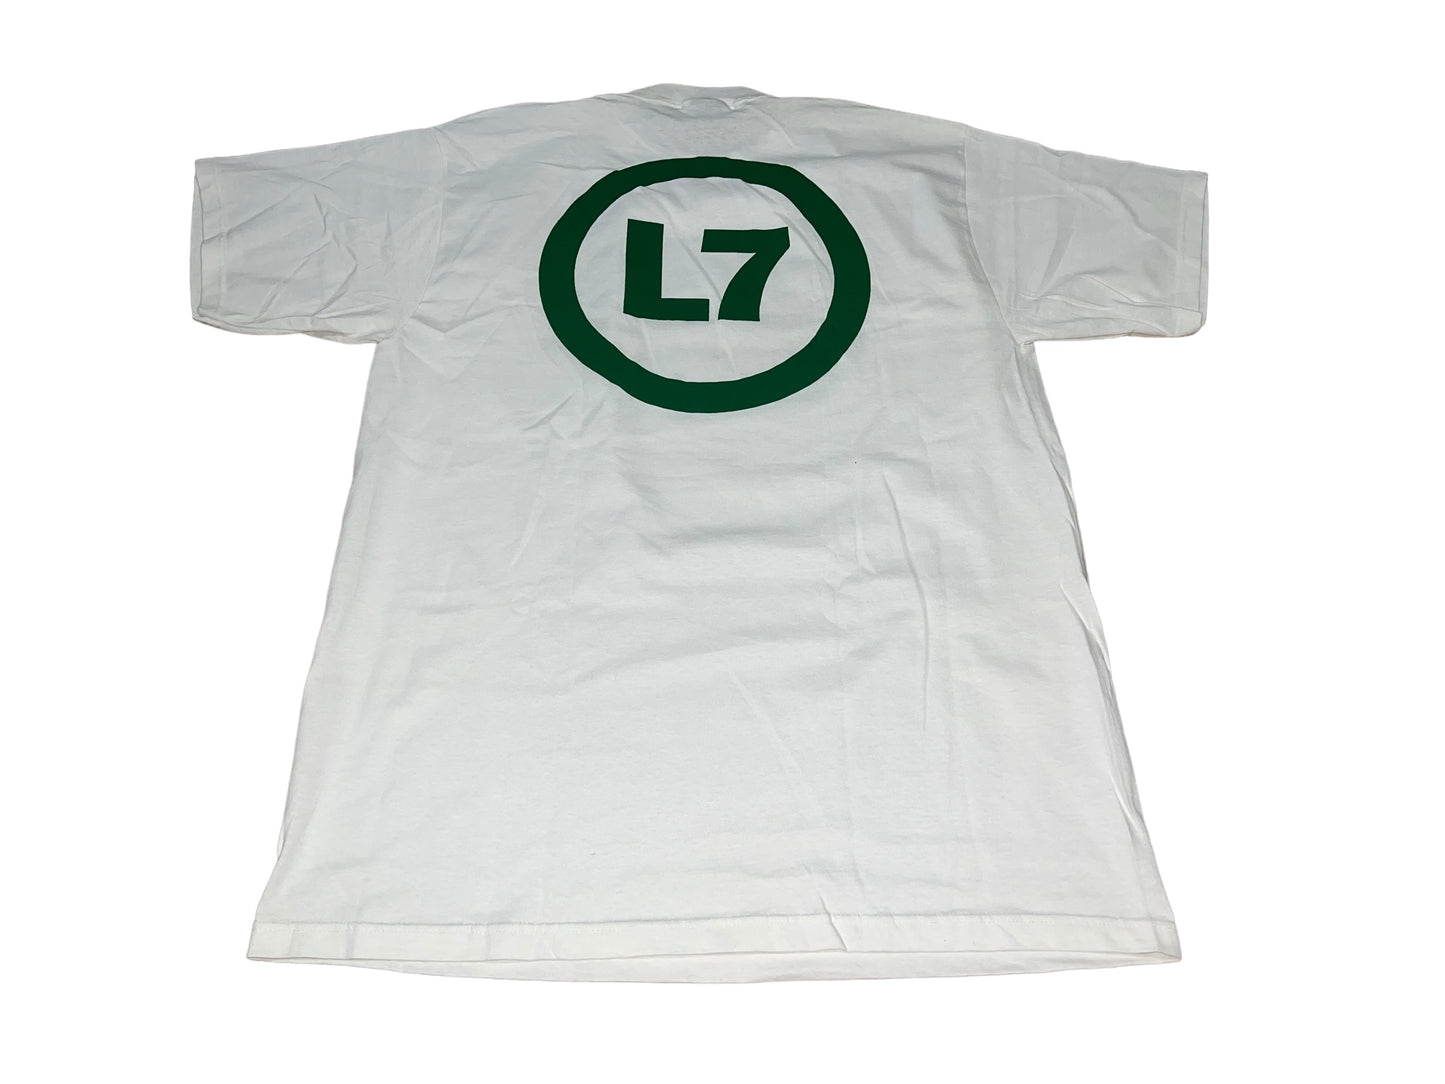 Vintage 90's L7 T-Shirt